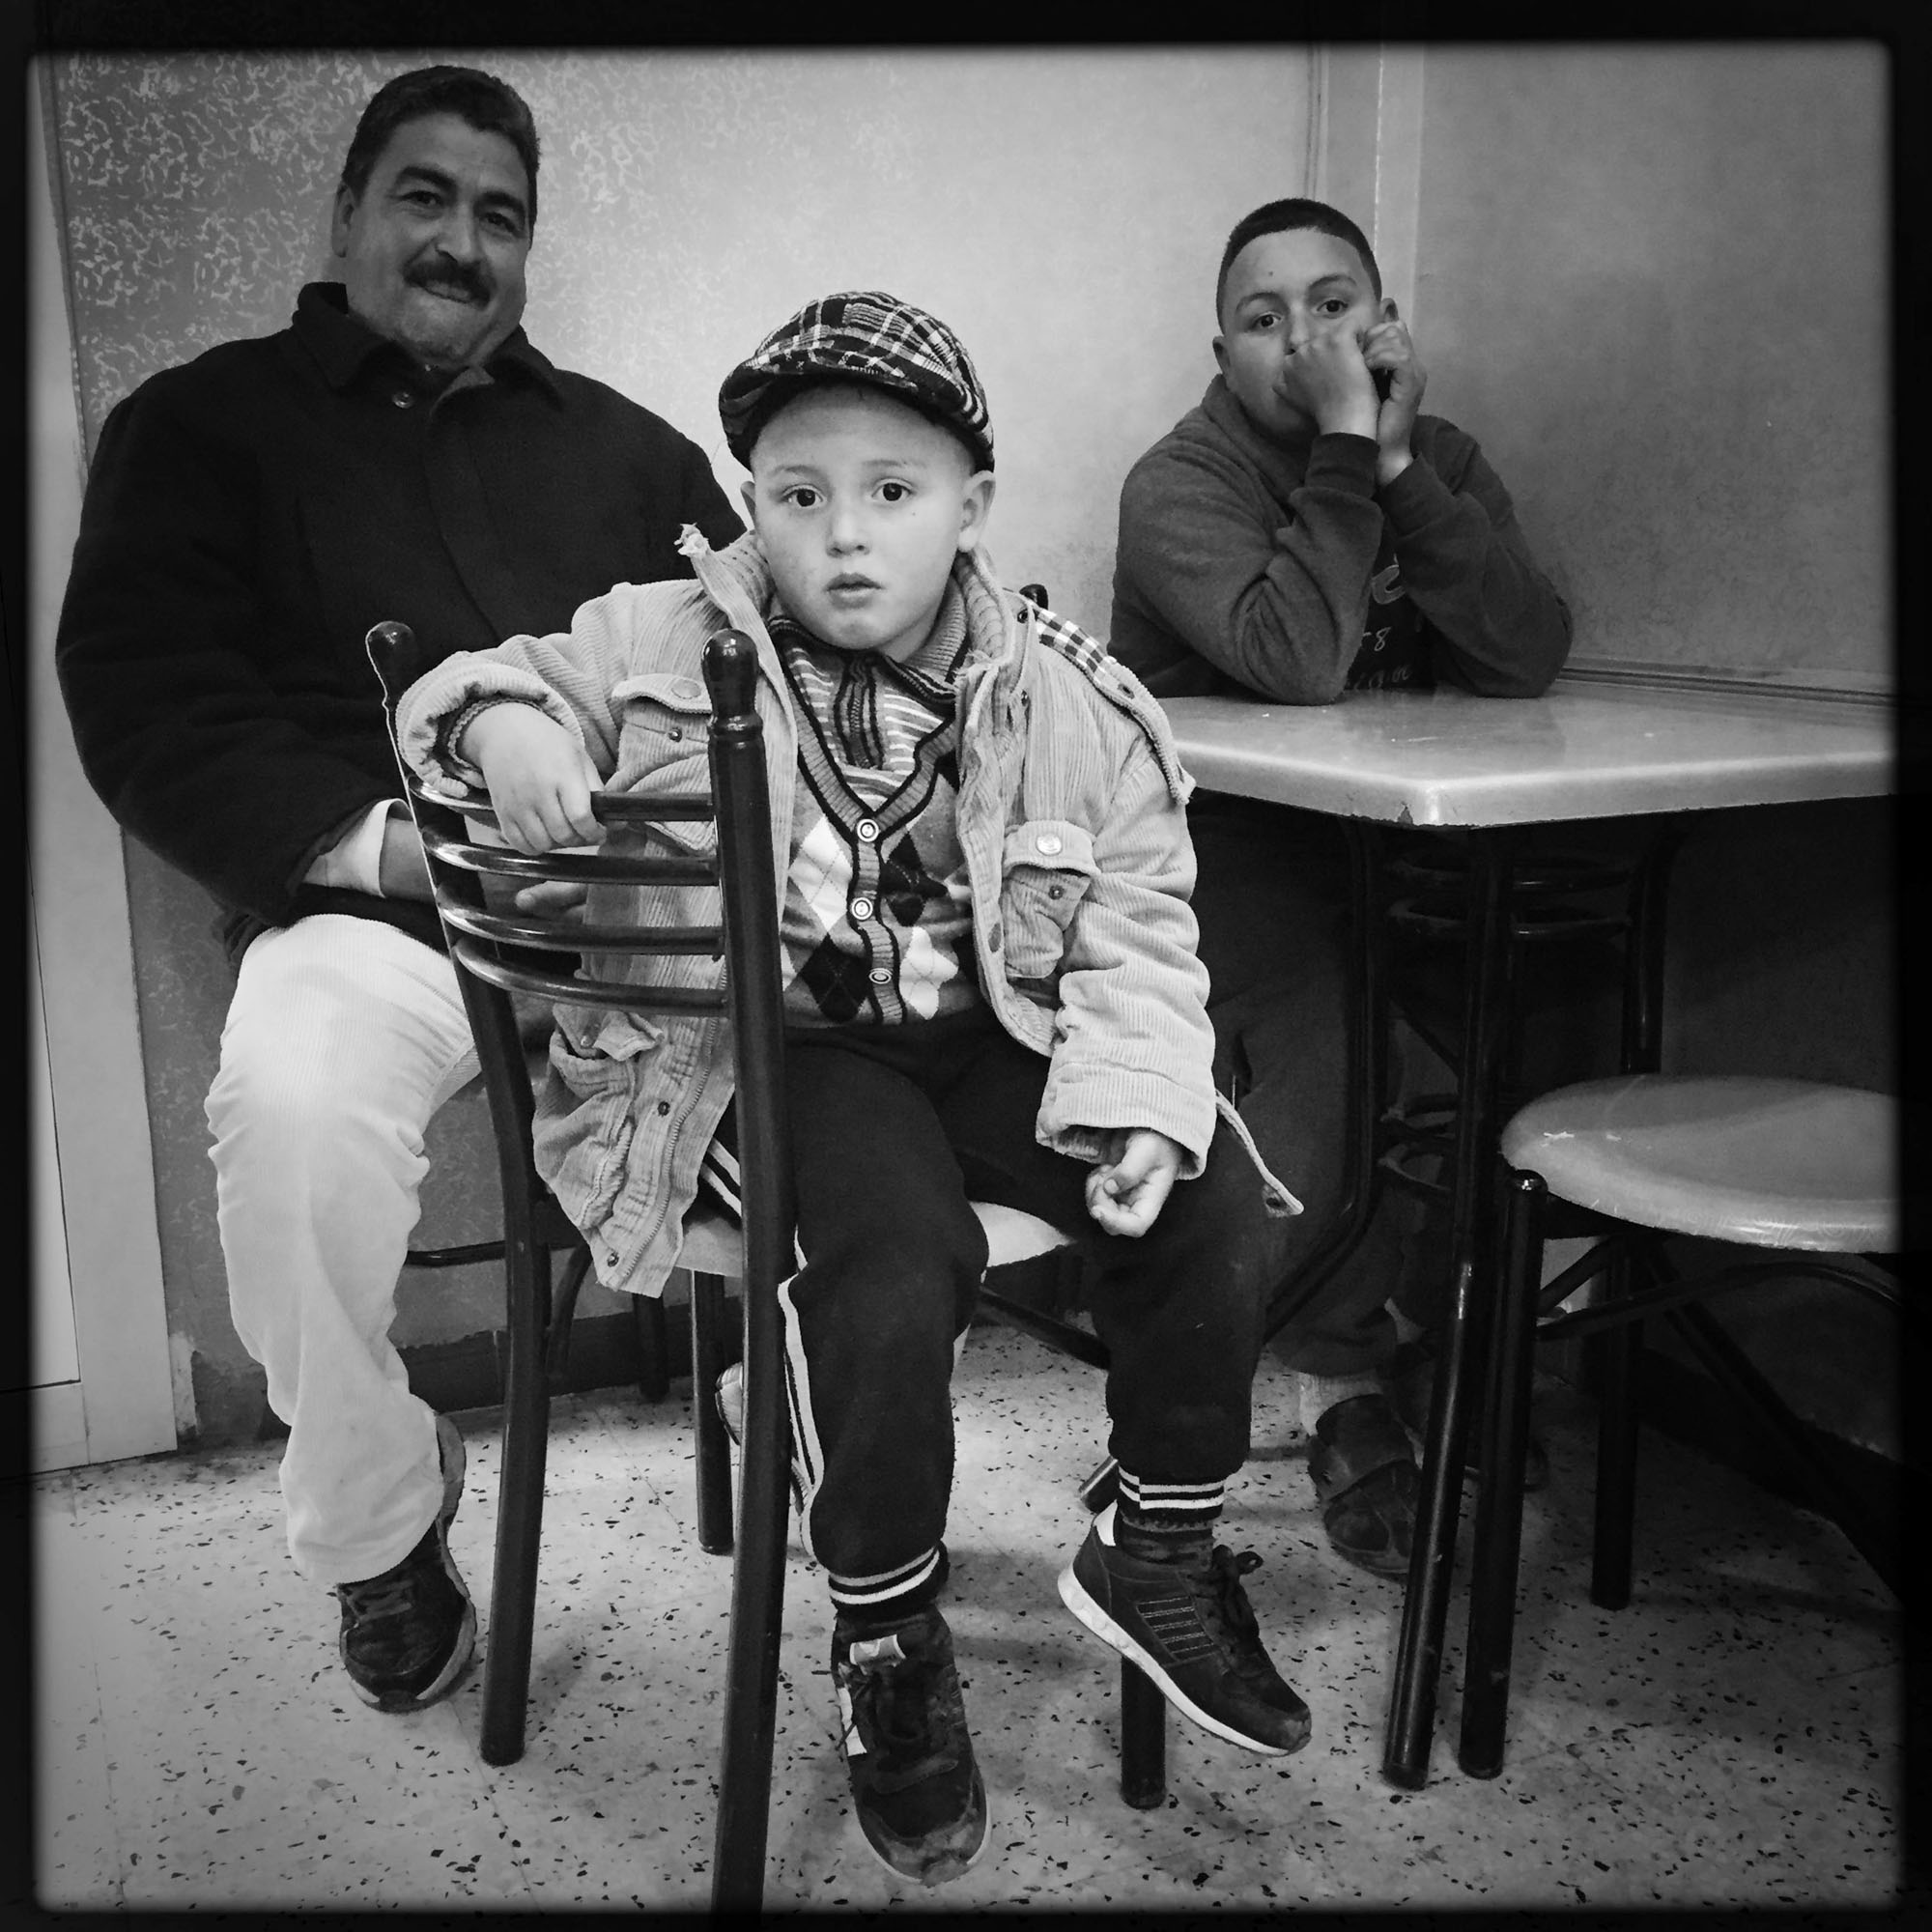 Un homme avec ses deux enfant attendent leur commande dans un restaurant. 13/02/2016, Kabylie-Algérie.